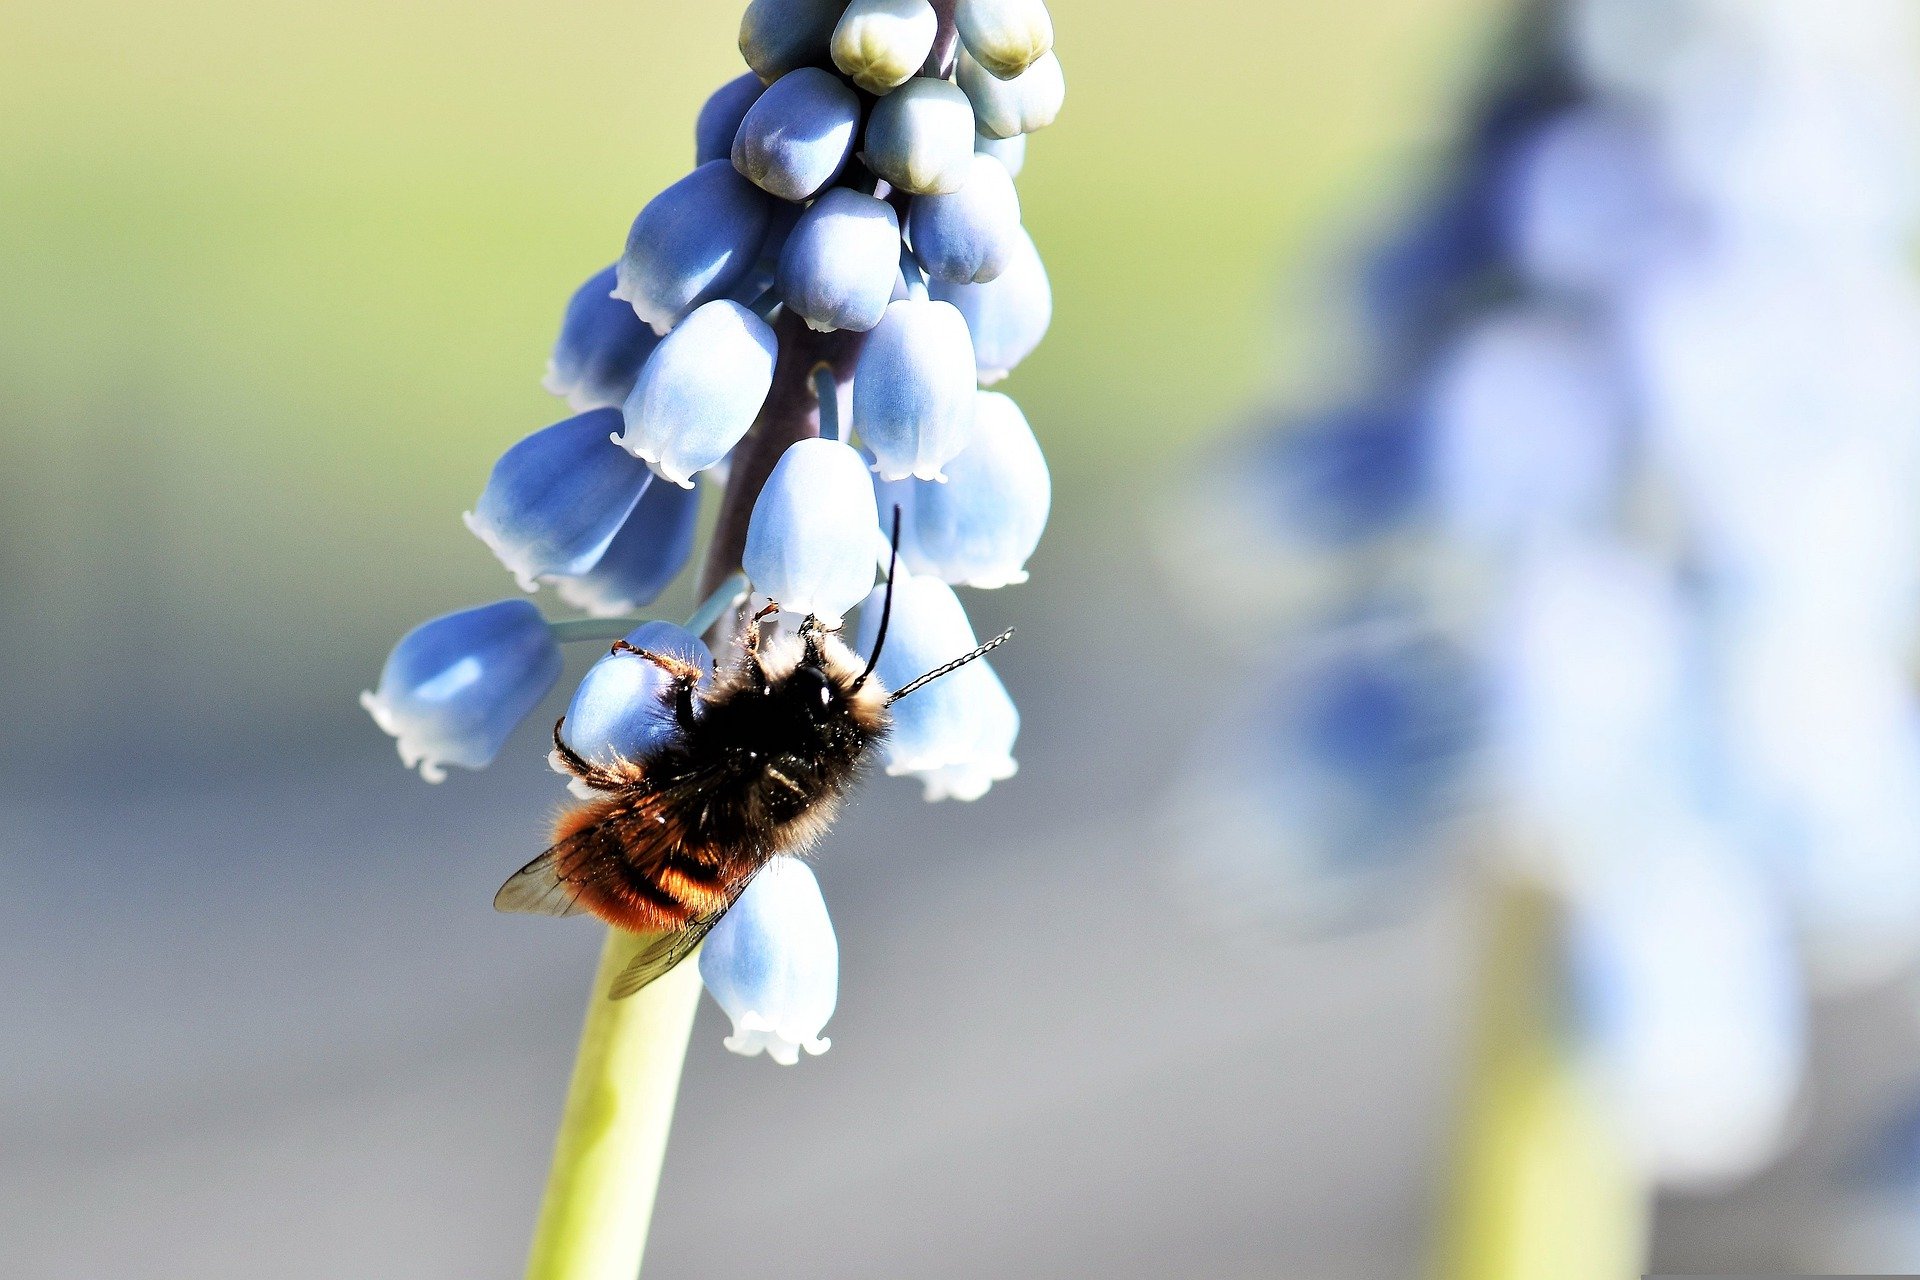 How to support the bumble bees - Garden tips - Garden Centres Canada